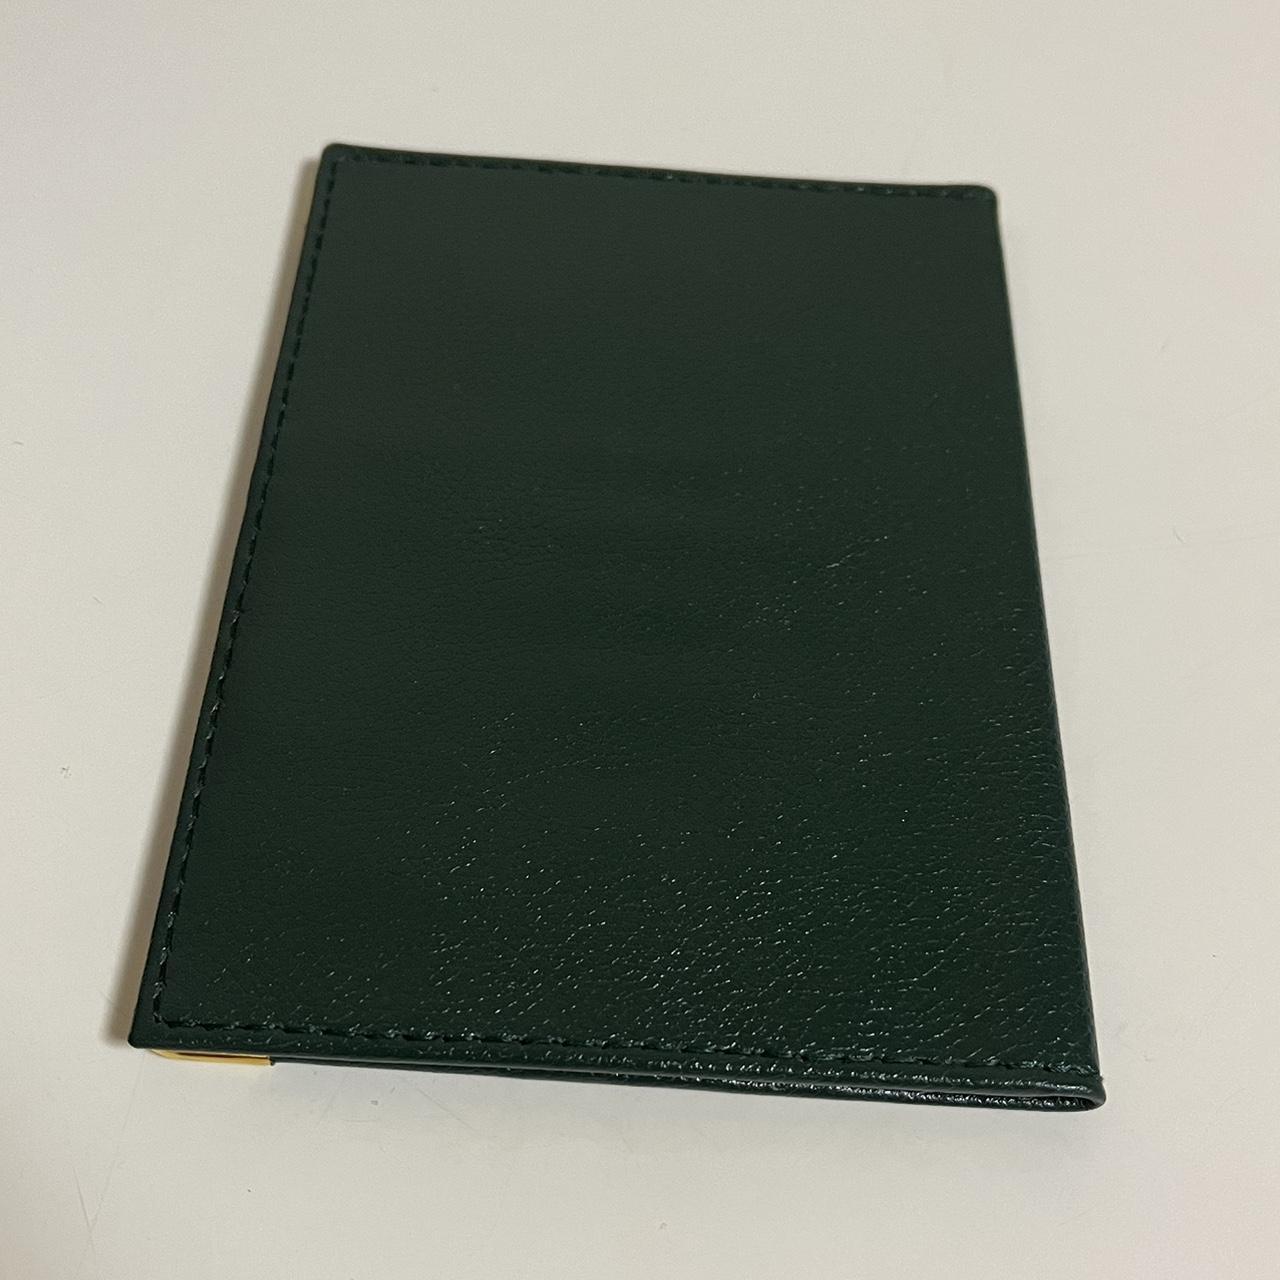 Product Image 2 - Rolex Passport Case Cardholder

Super rare